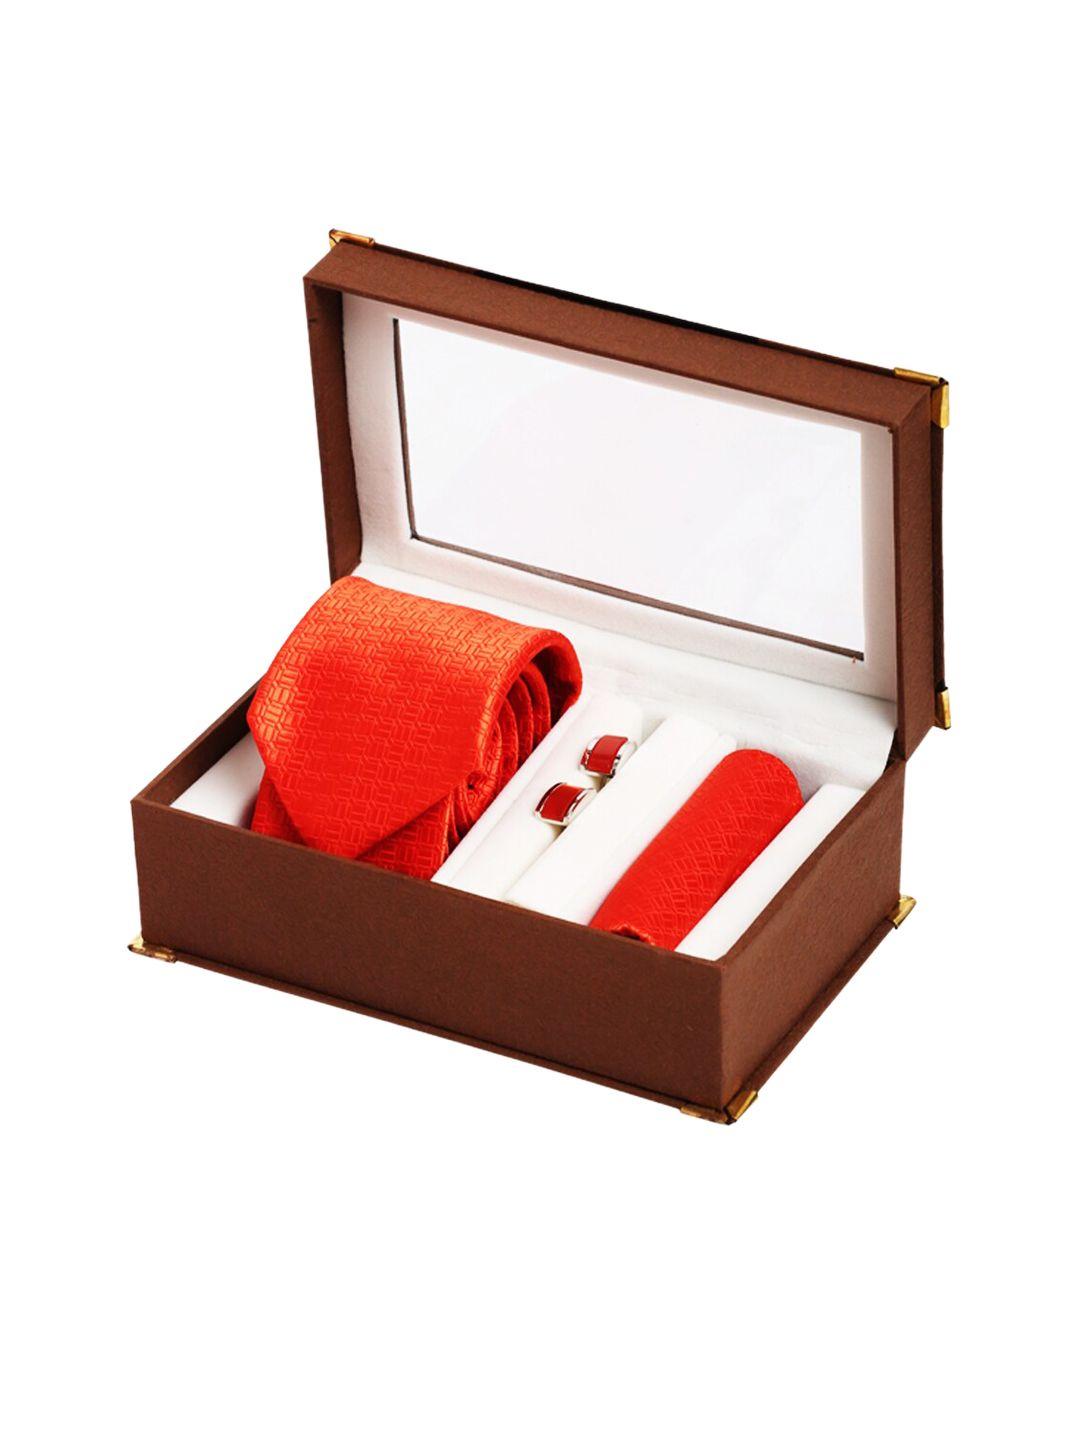 alvaro castagnino men red accessory gift set